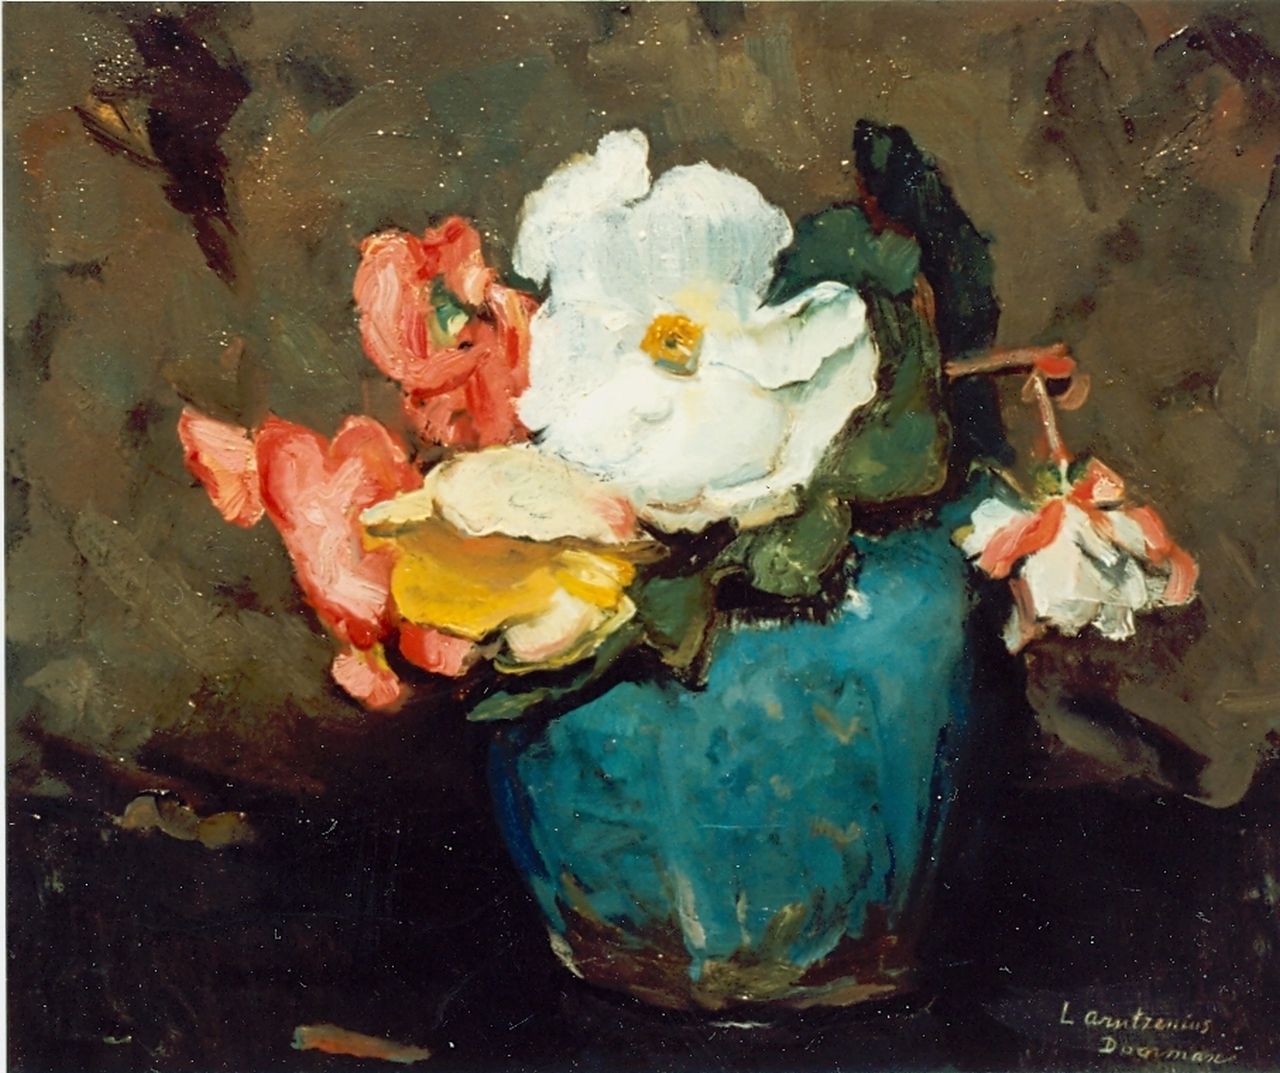 Arntzenius A.M.M.  | Alide Margaretha Maria 'Liekie' Arntzenius, Flowers in a ginger jar, oil on canvas 31.5 x 38.5 cm, signed l.r.